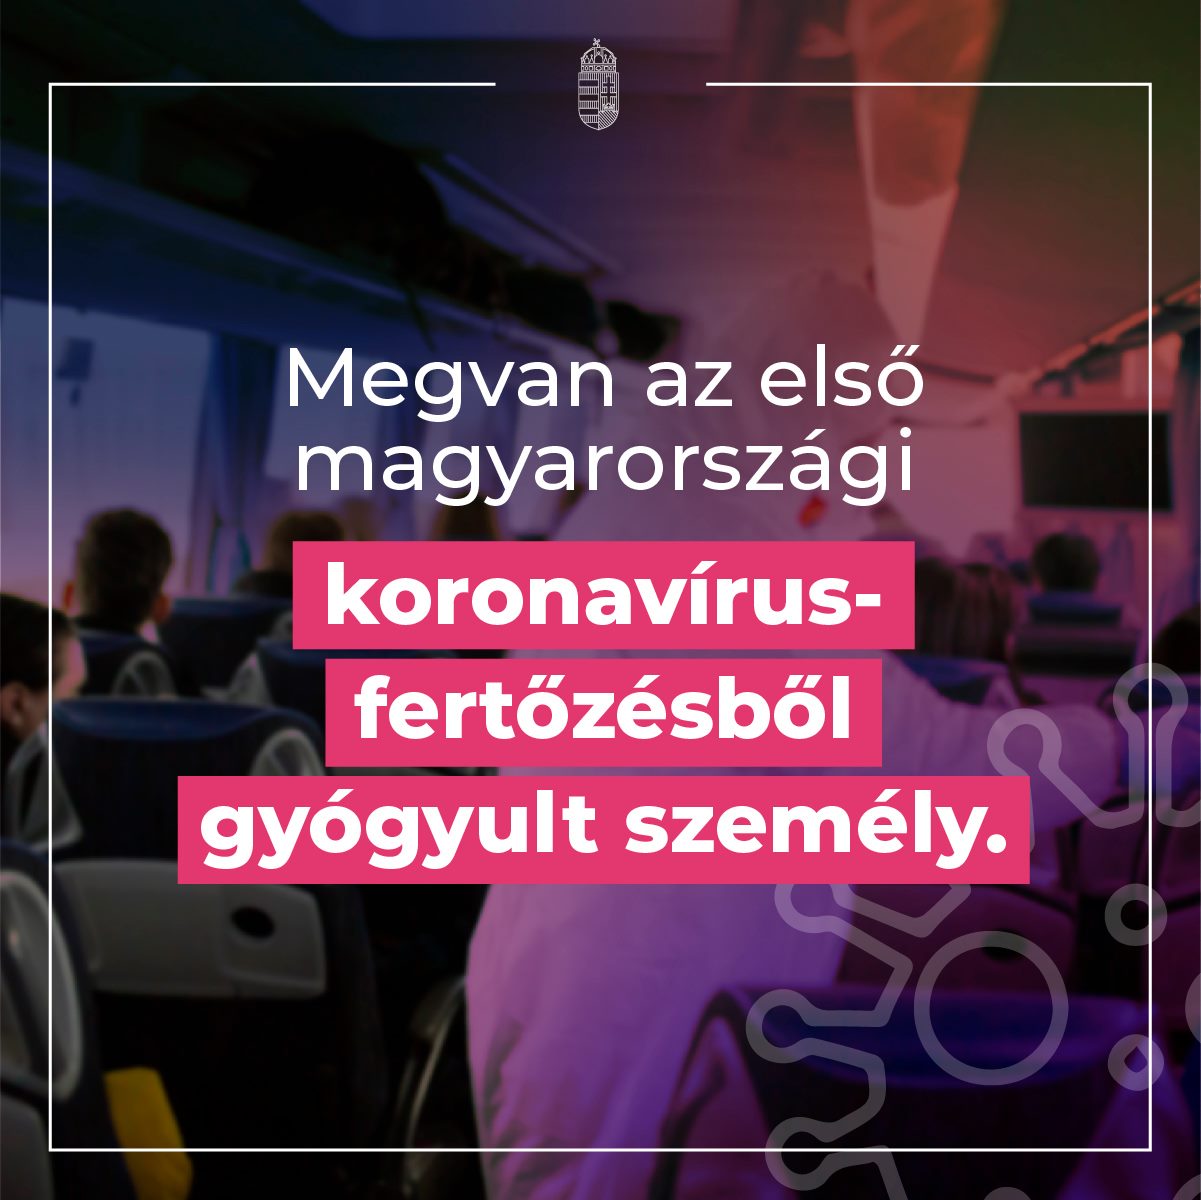 Megvan az első magyarországi koronavírus-fertőzésből gyógyult személy.Megvan az első…